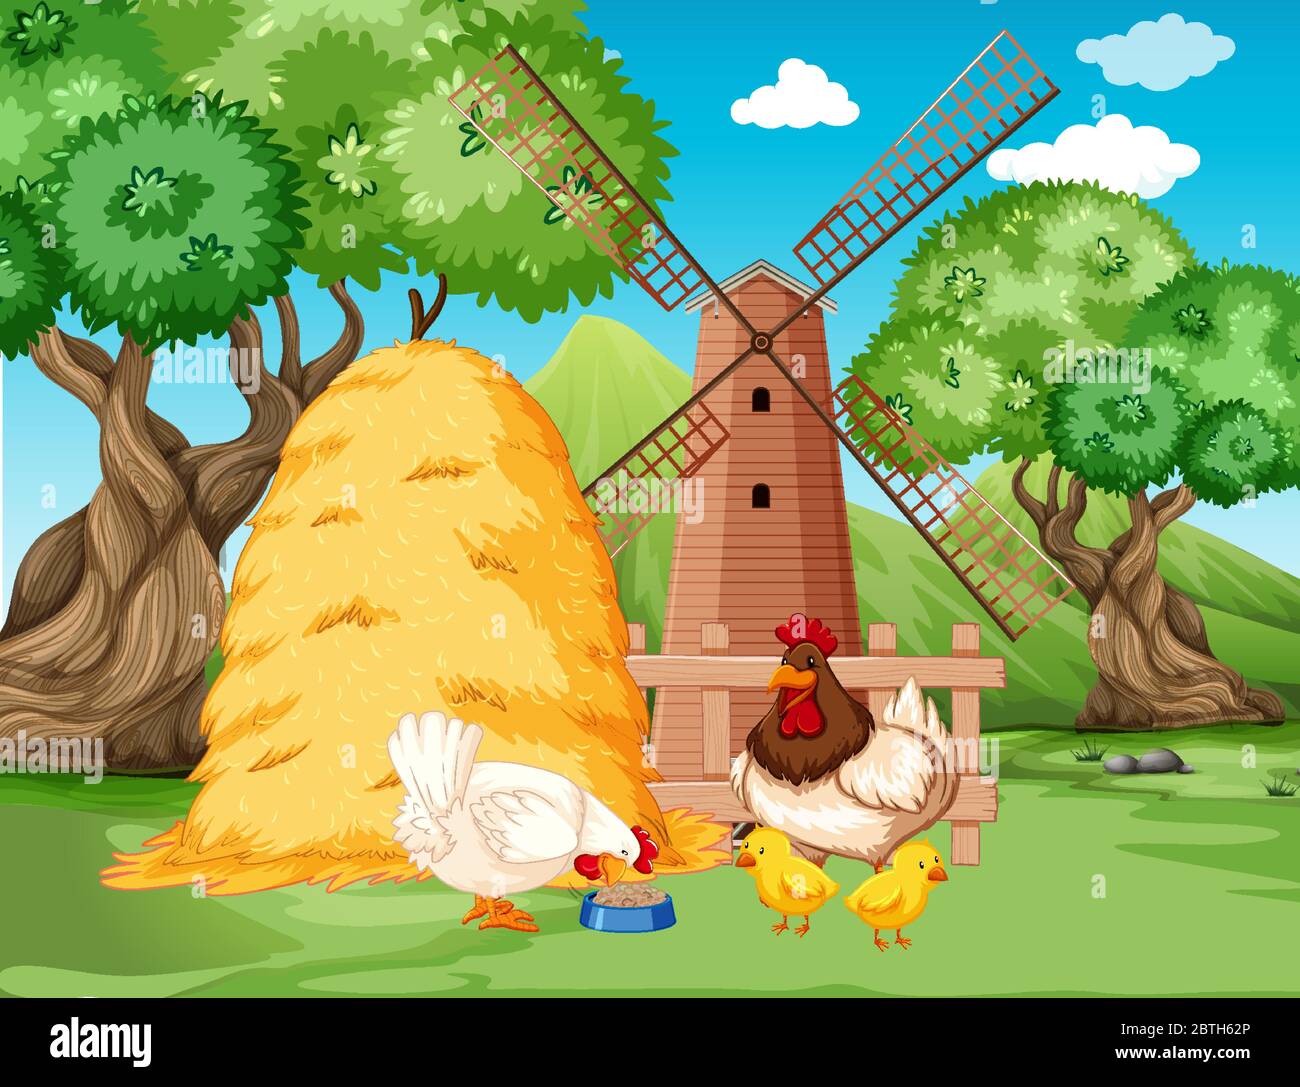 Chicken family at farm illustration Stock Vector